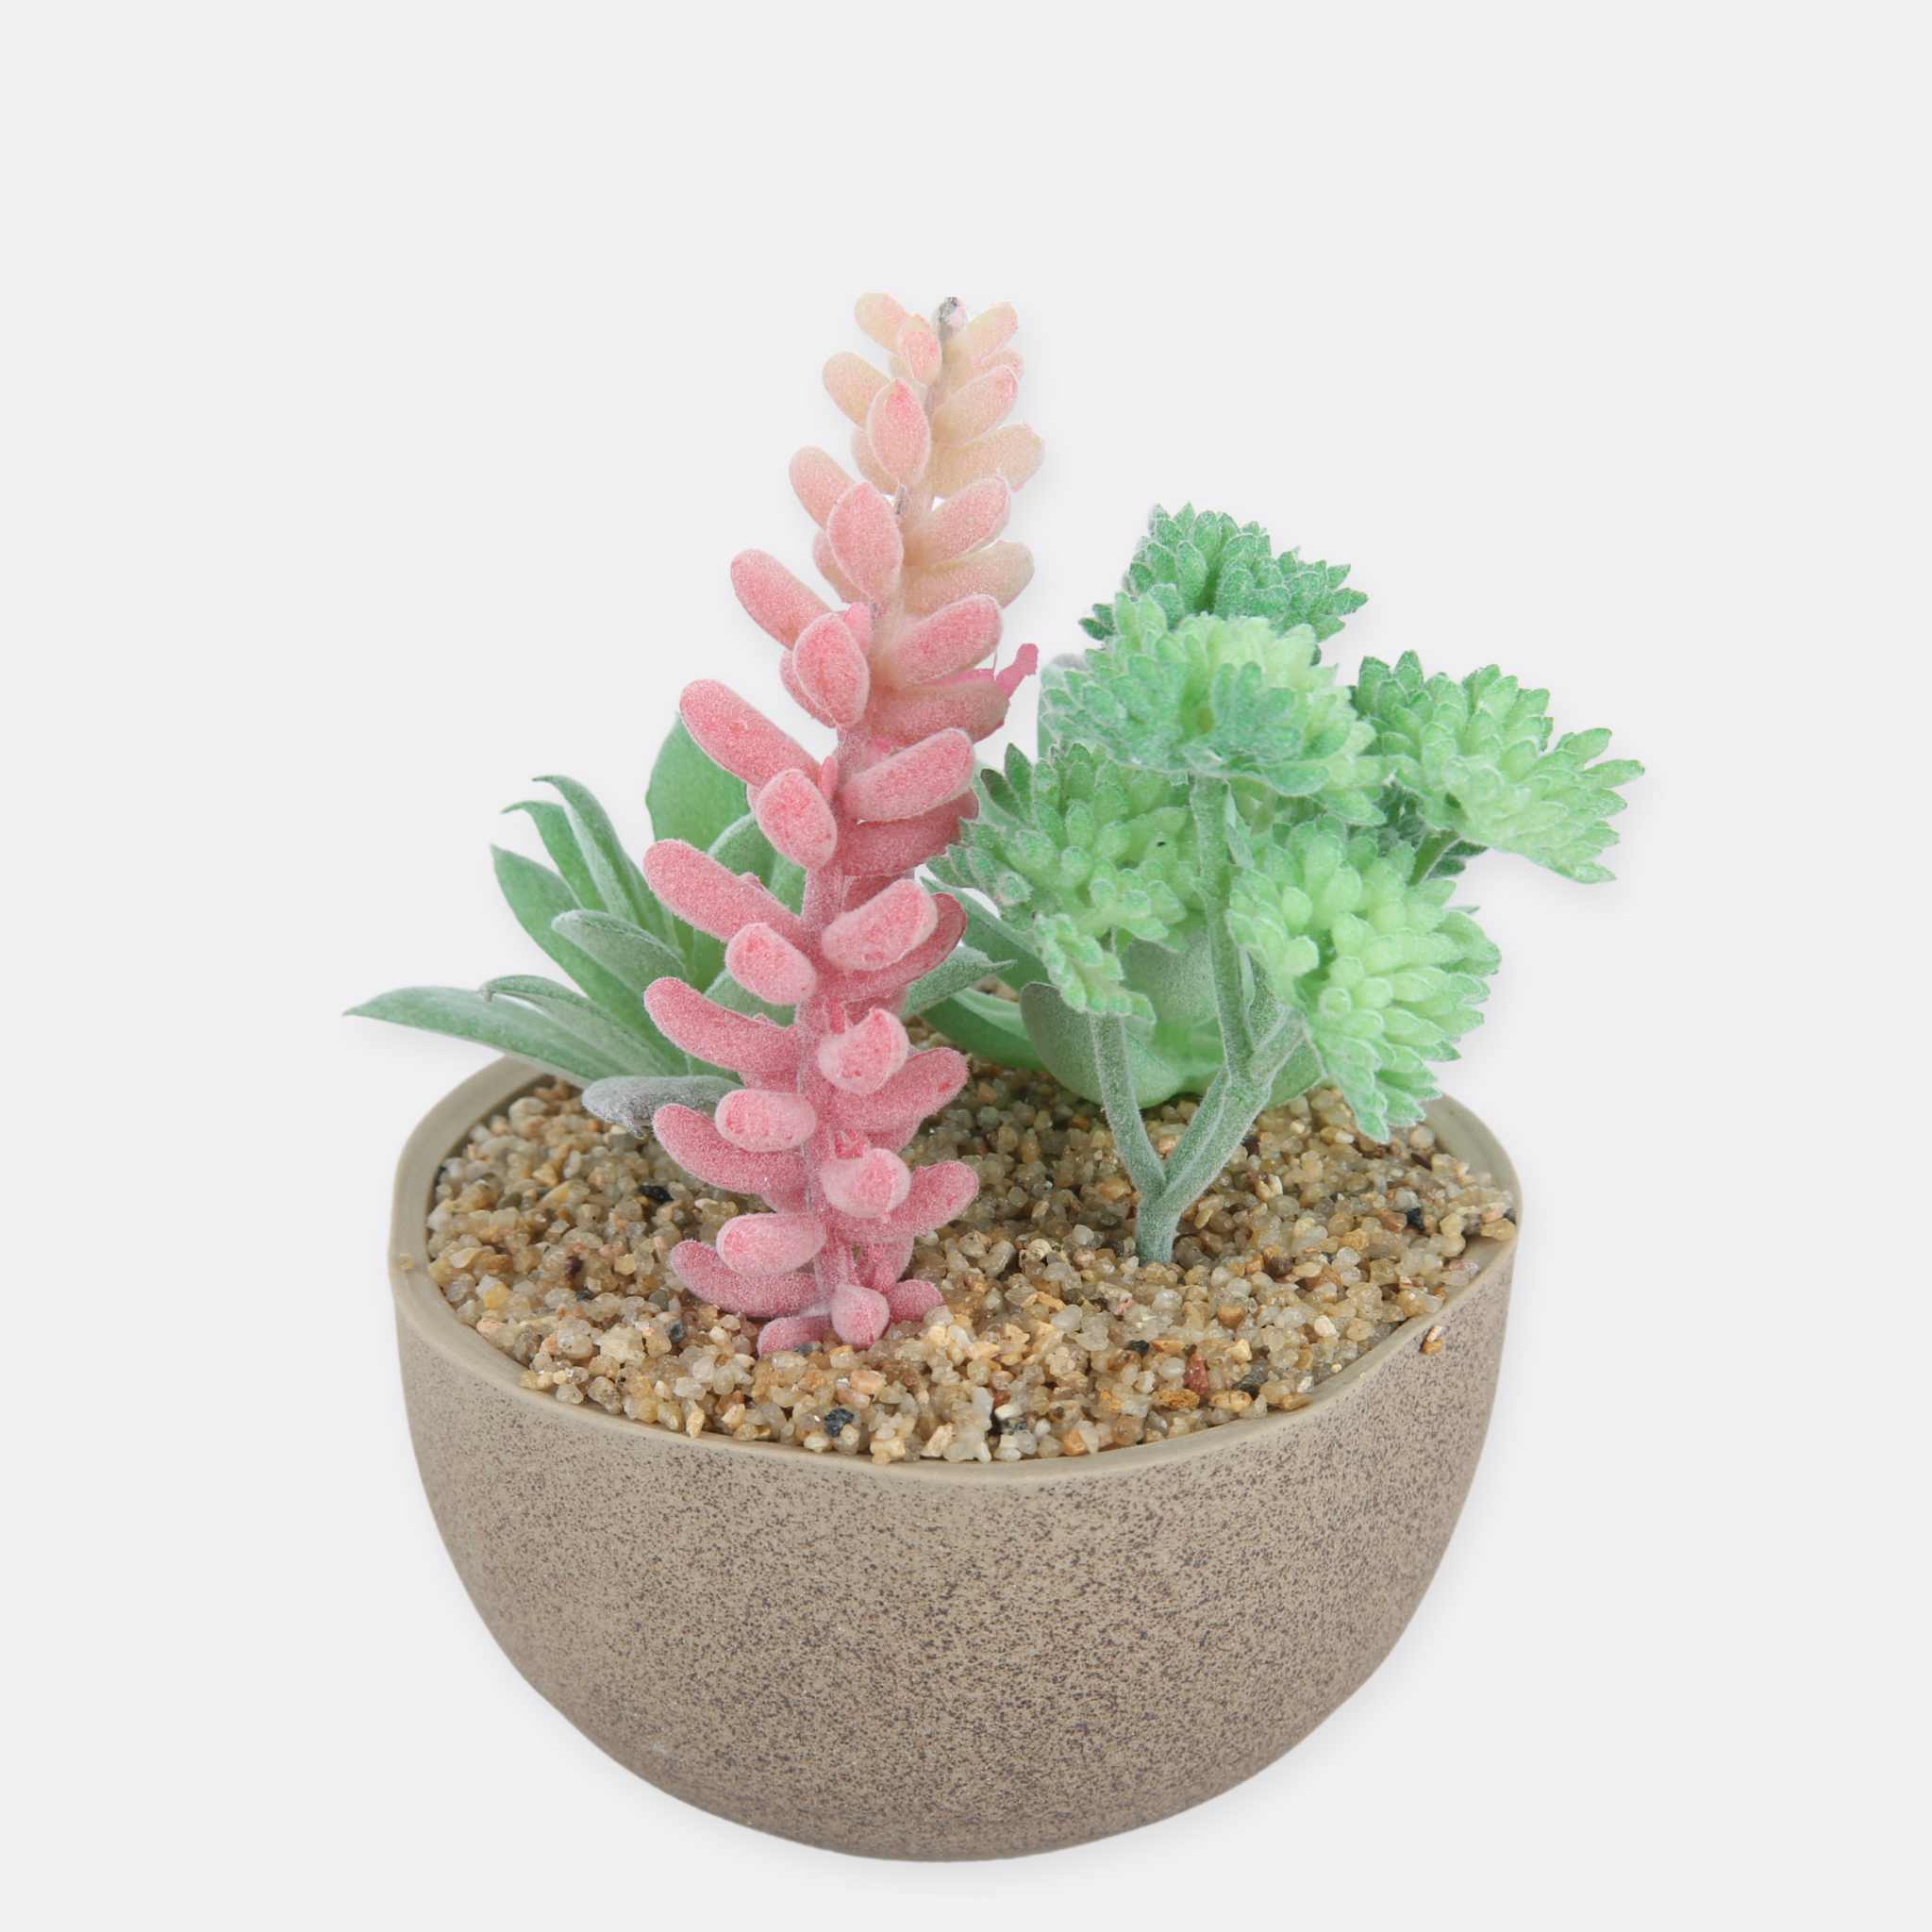 Tinge Plant Arrangement With Ductile Pot